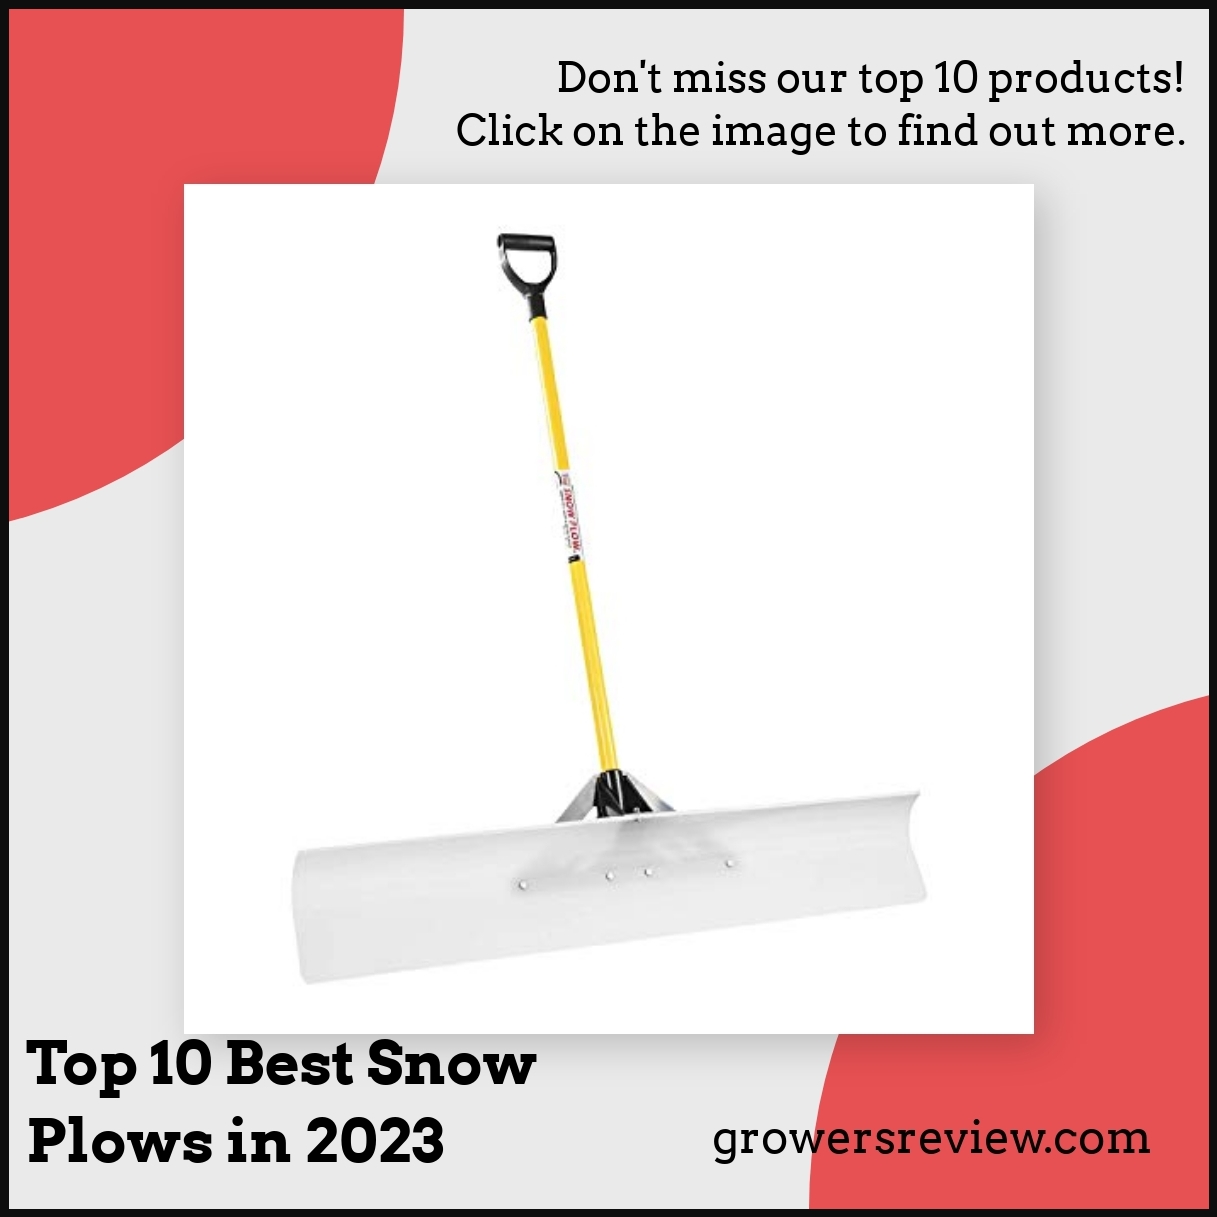 Top 10 Best Snow Plows in 2023